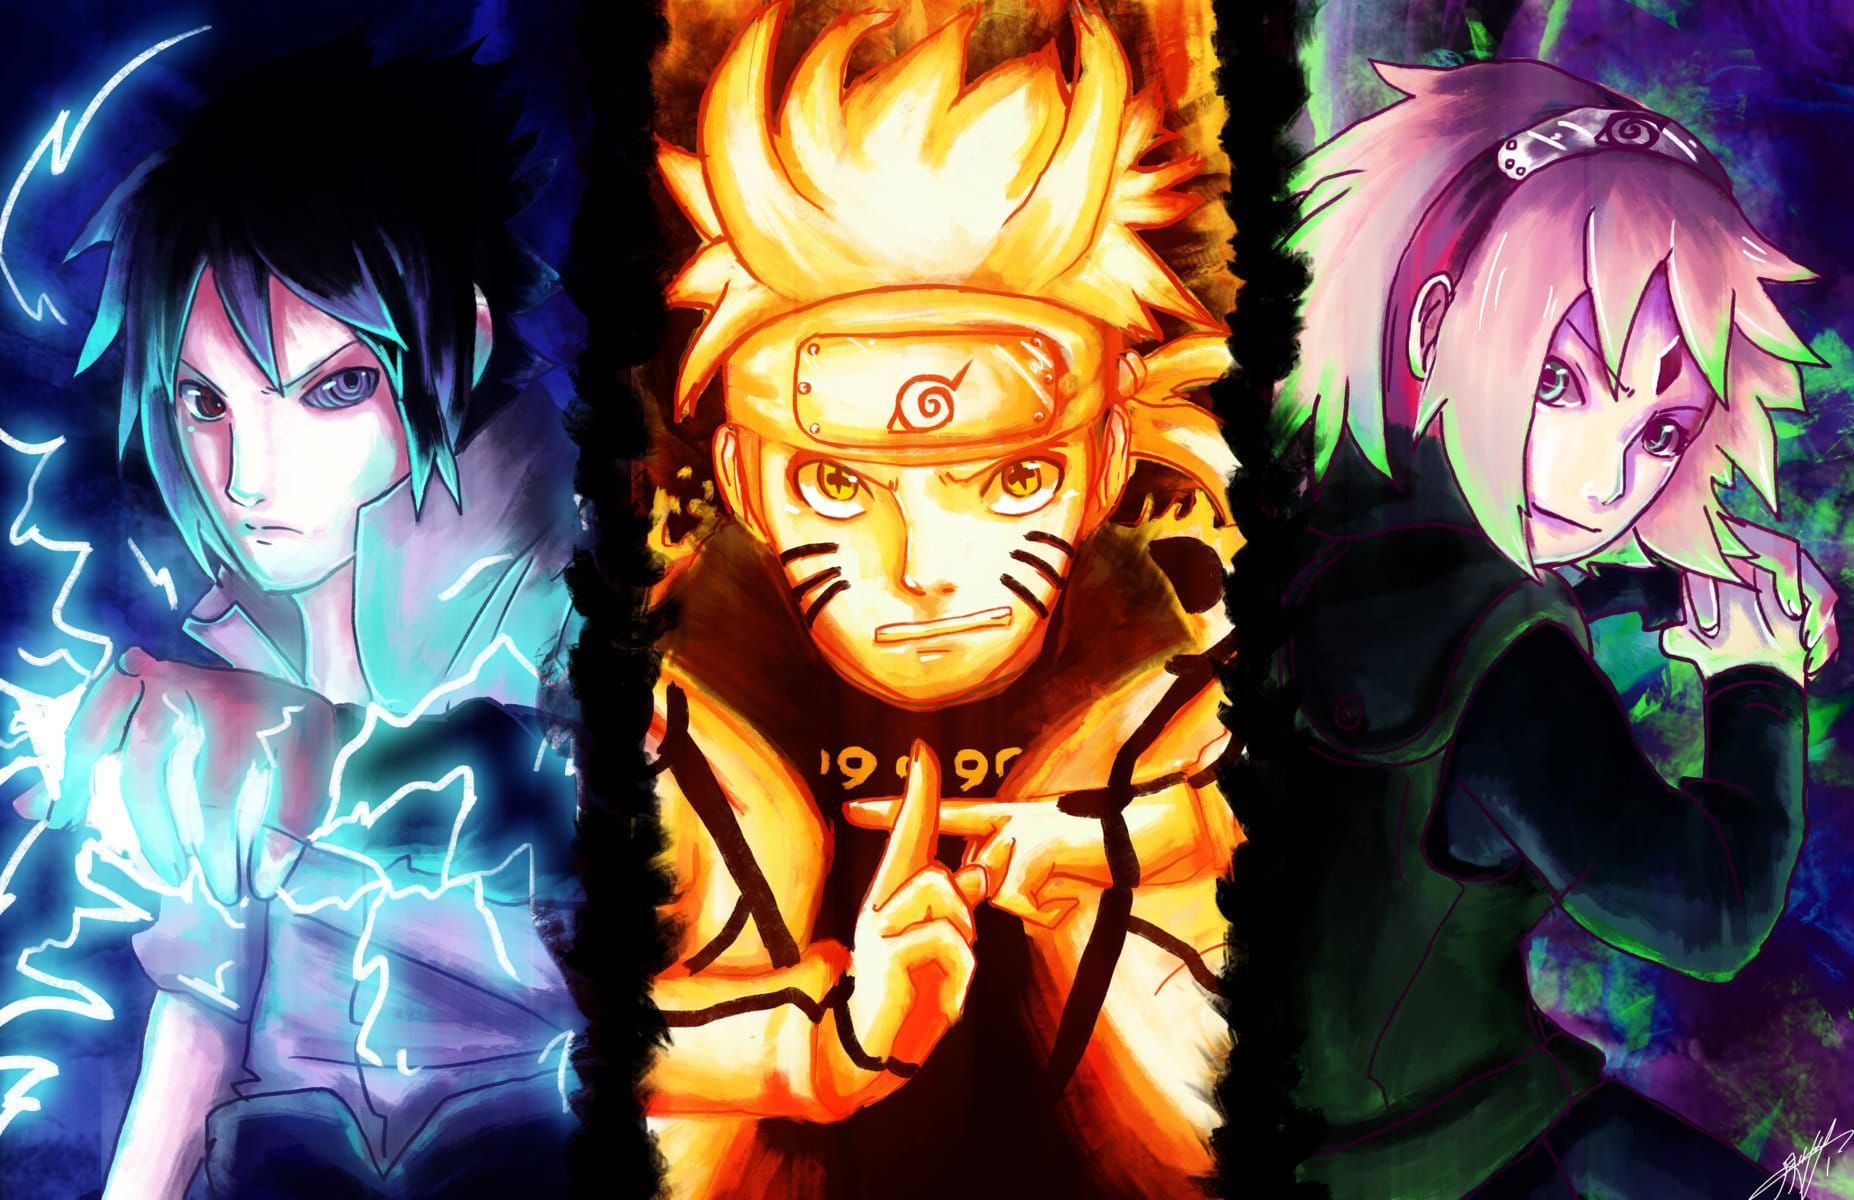 Khi biến tấu từ cốt truyện Naruto truyền thống, ảnh nền Naruto lục đạo lại là một tác phẩm đặc biệt của game thủ. Không những tôn lên sự độc đáo trong từng phân cảnh, màu sắc độc đáo cùng phong cách hoàn toàn mới, điều chia sẻ giữa những người yêu Naruto là sự sáng tạo không giới hạn.